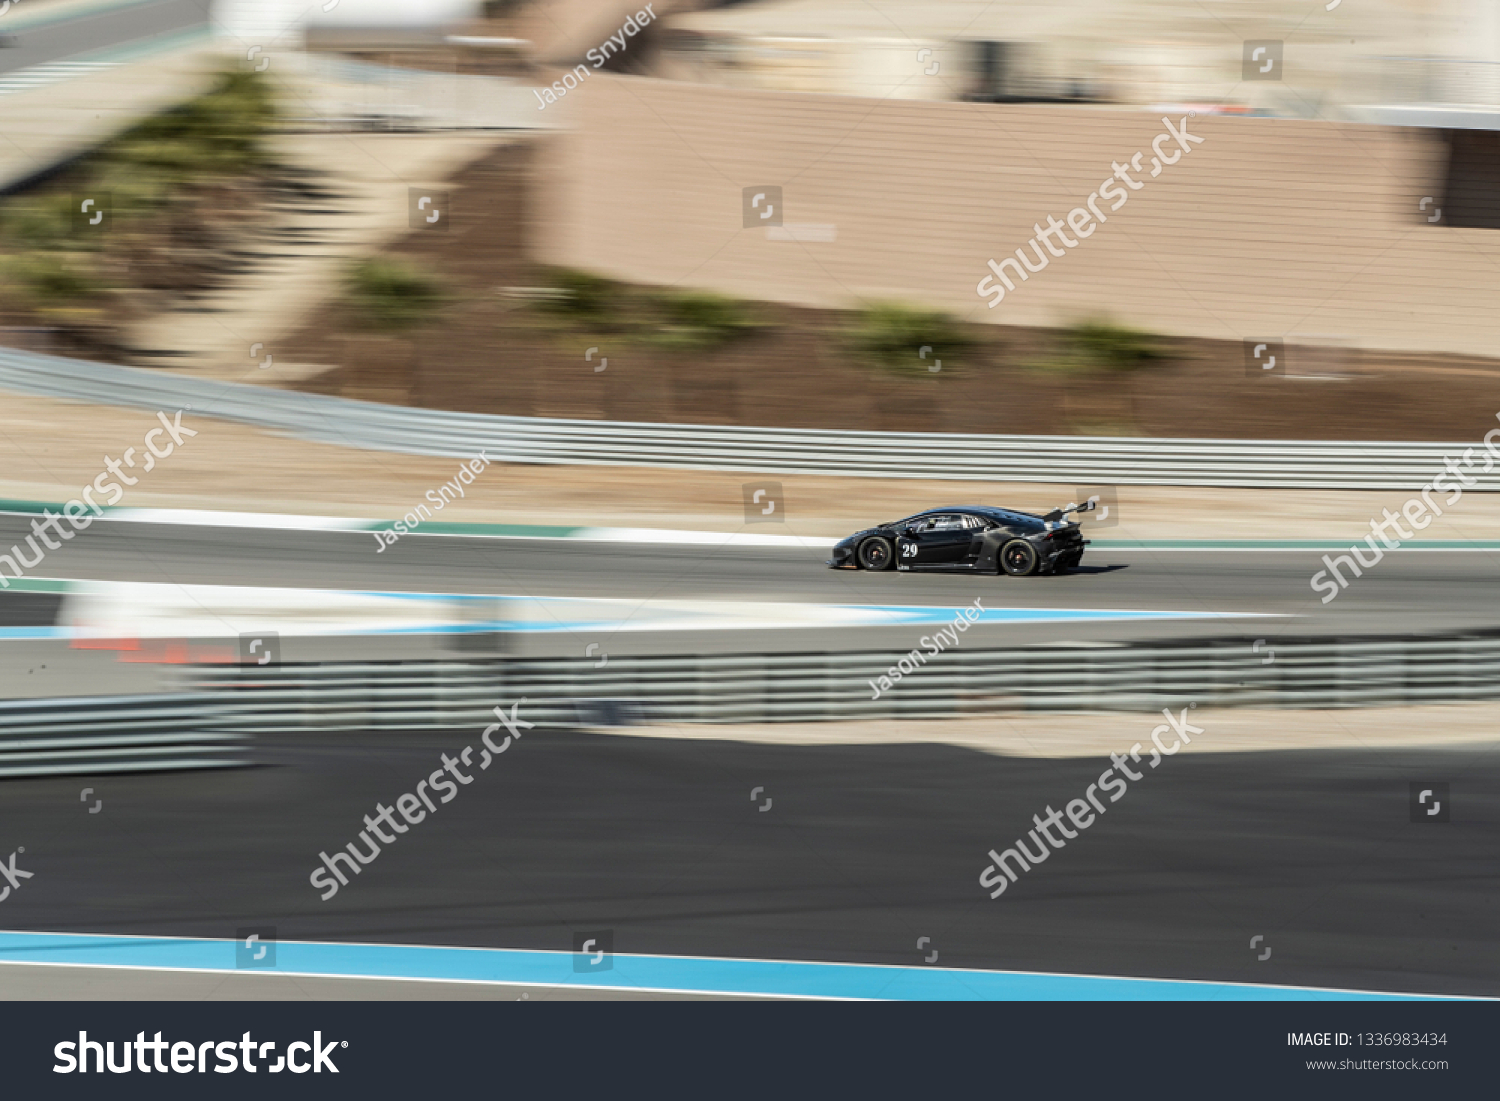 Race car on a race track. #1336983434